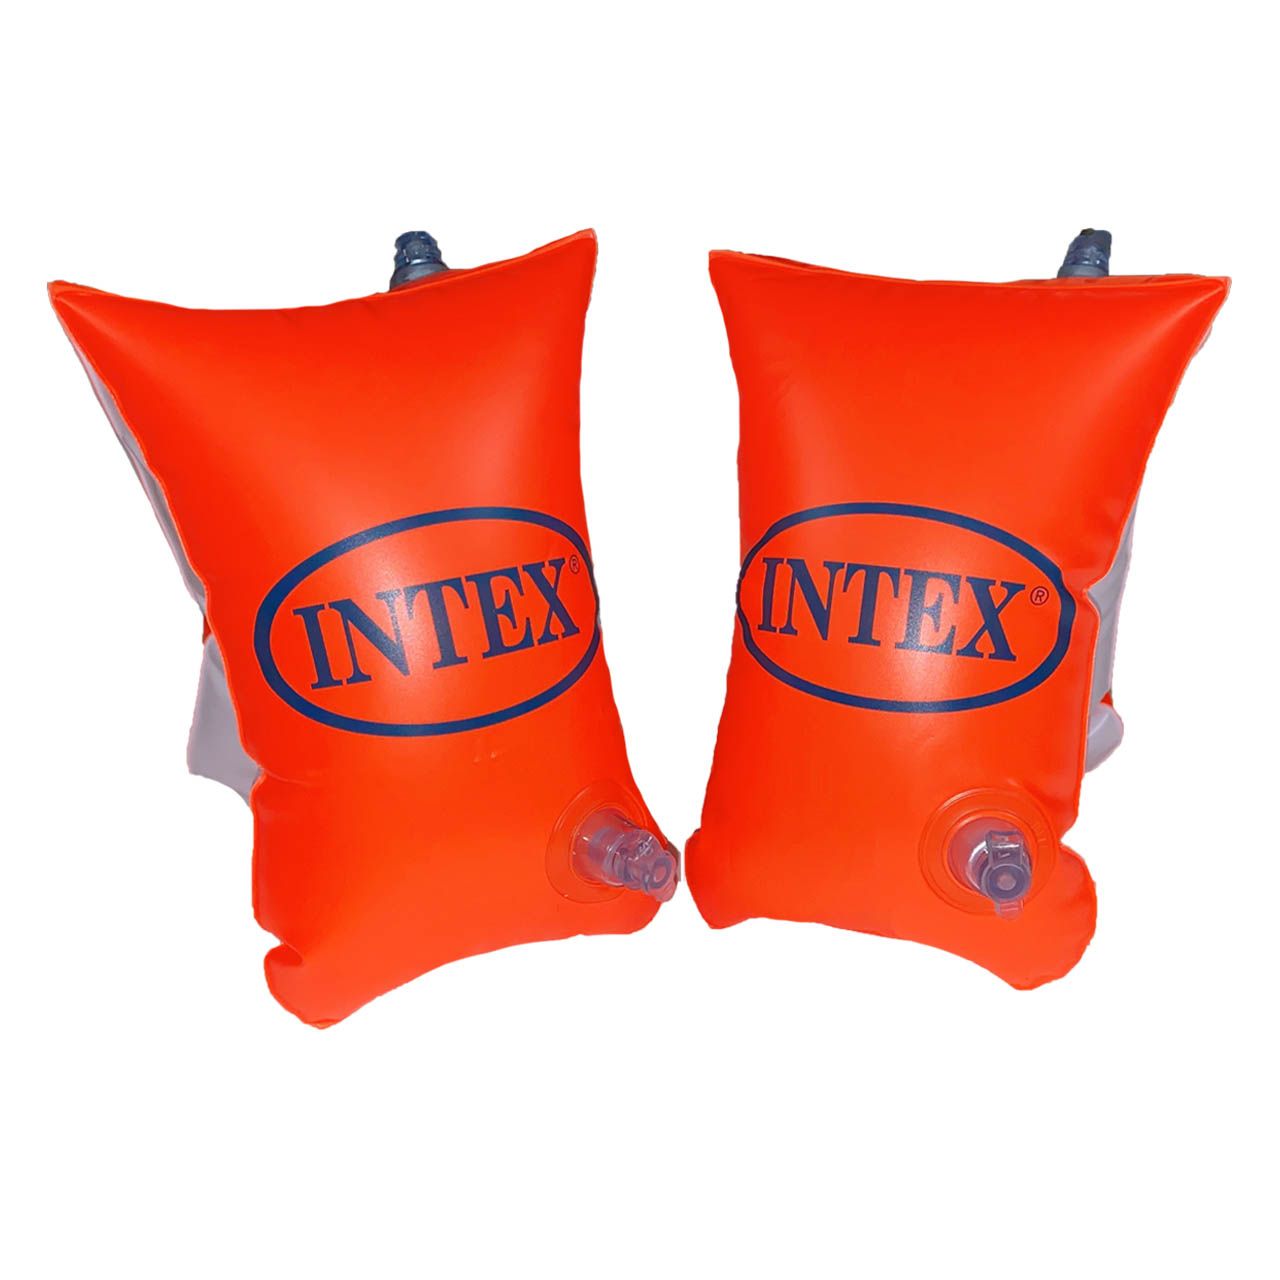 بازوبند شنا بادی اینتکس  مدل INTEX6-12 بسته 2 عددی -  - 1